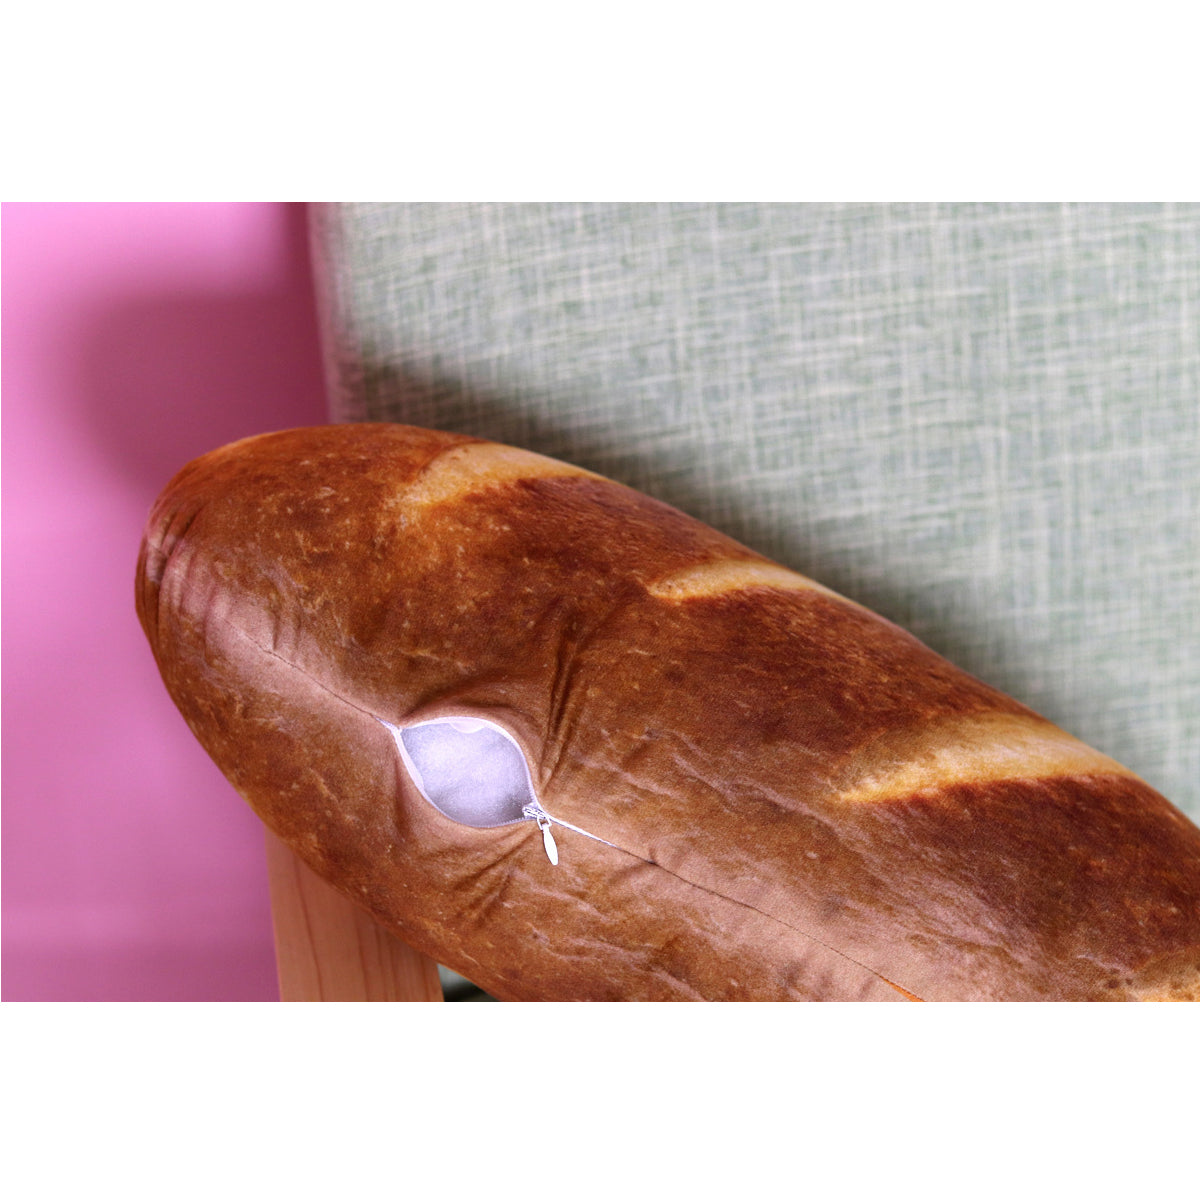 Pão gigante almofada de pelúcia macia brinquedo travesseiro